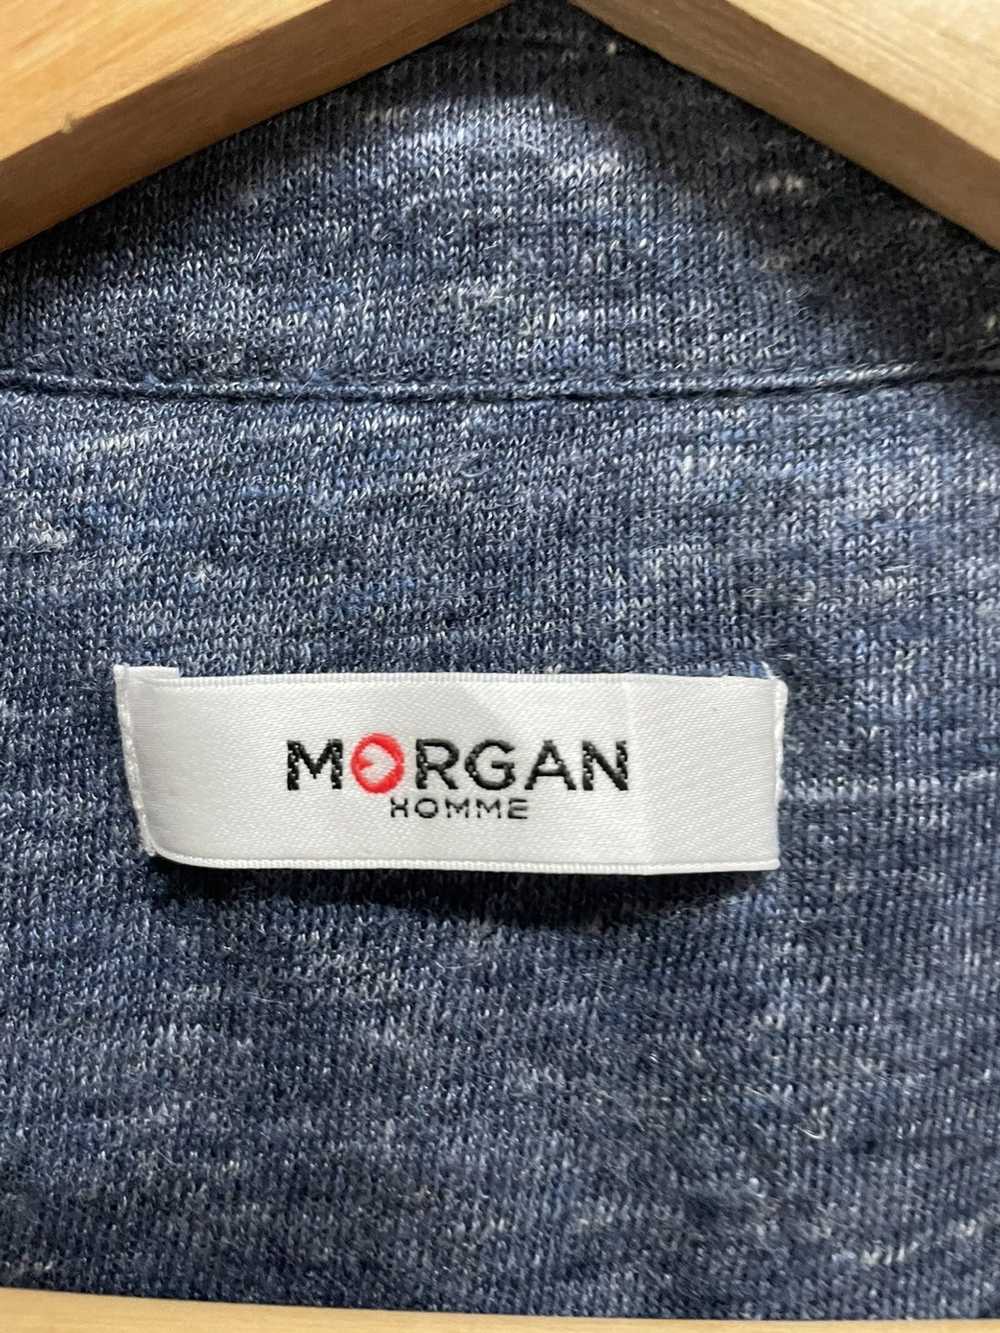 Morgan Homme Morgan Homme Cardigan - image 4